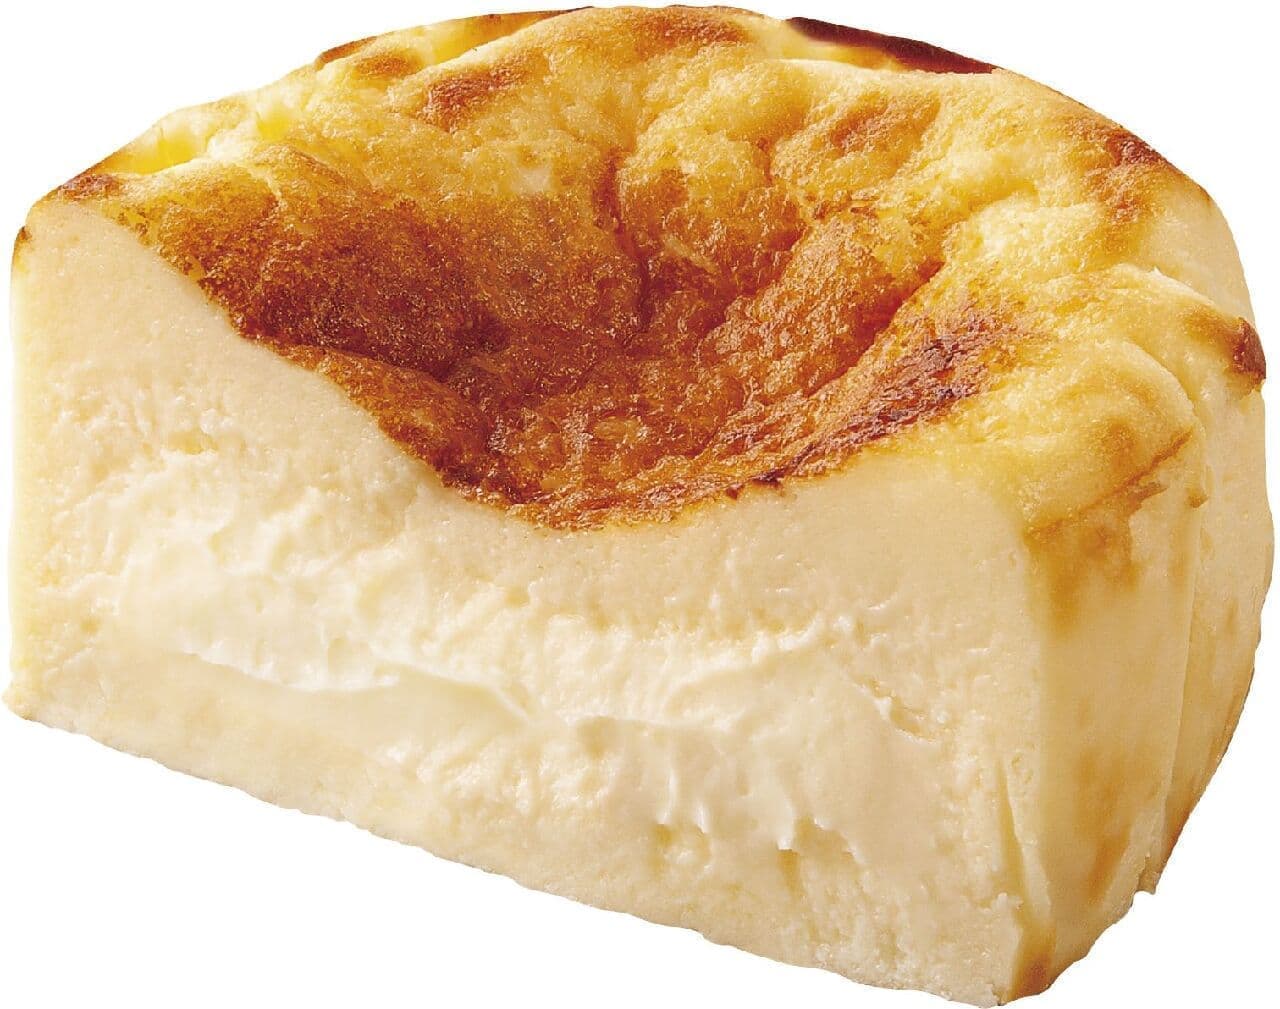 Godiva "Basque Cheesecake White Chocolate"